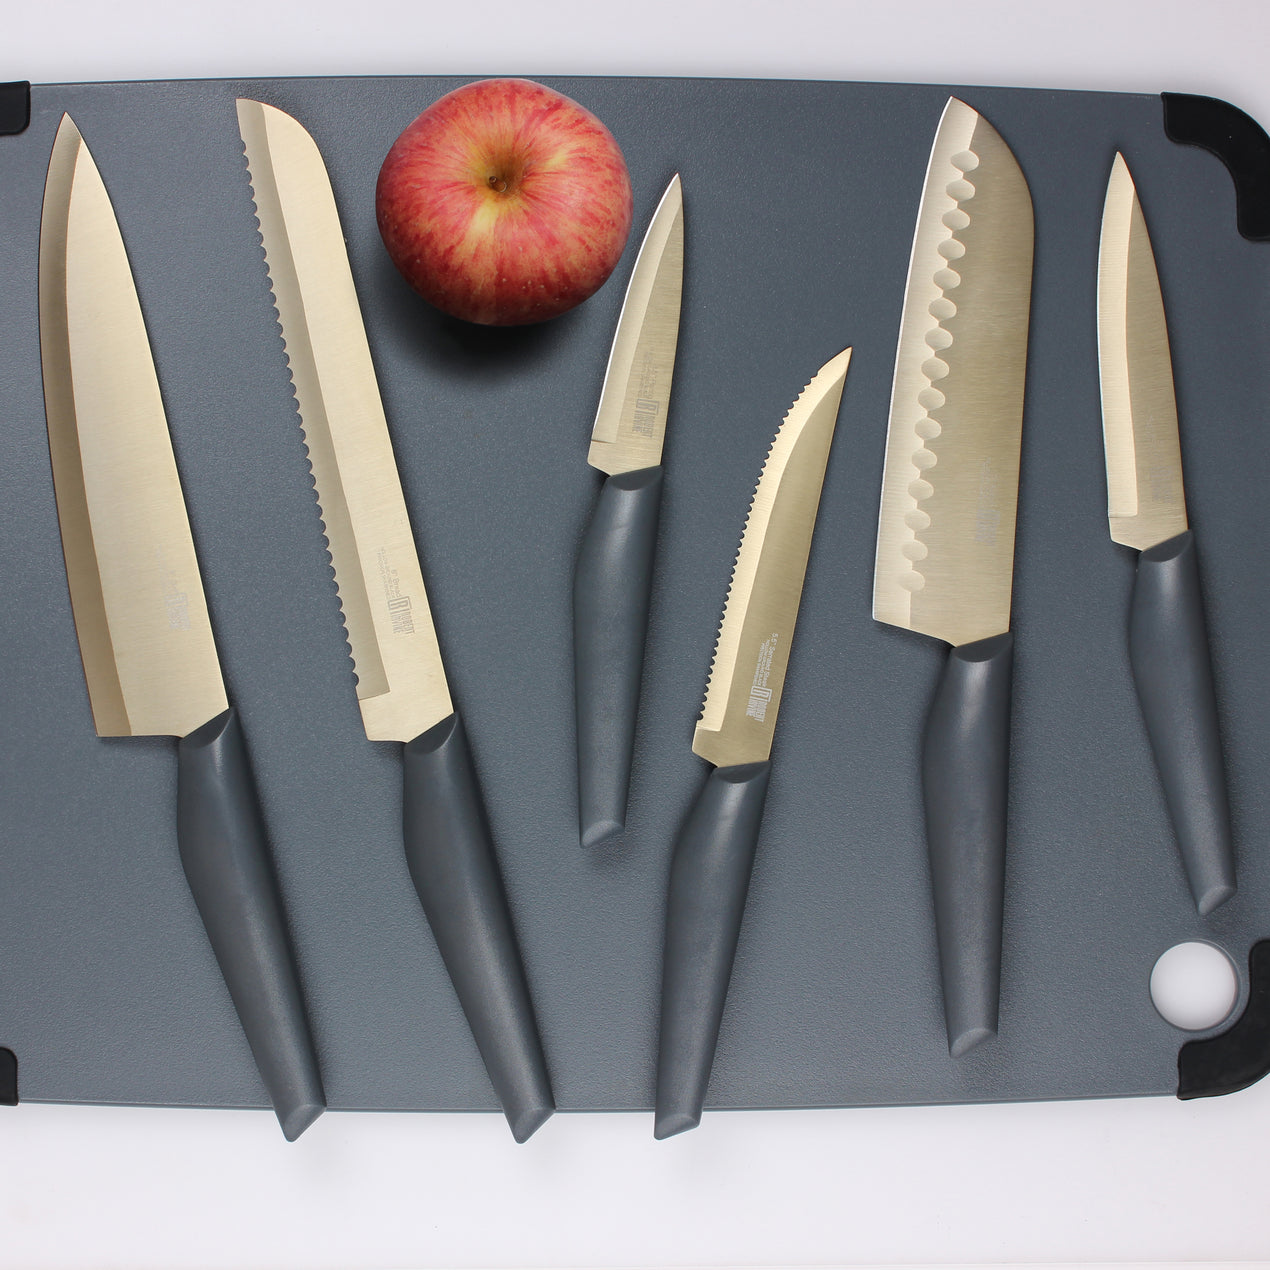 Robert Irvine 10-Piece Cutlery Set, Grey/Champagne – Cambridge Silversmiths®